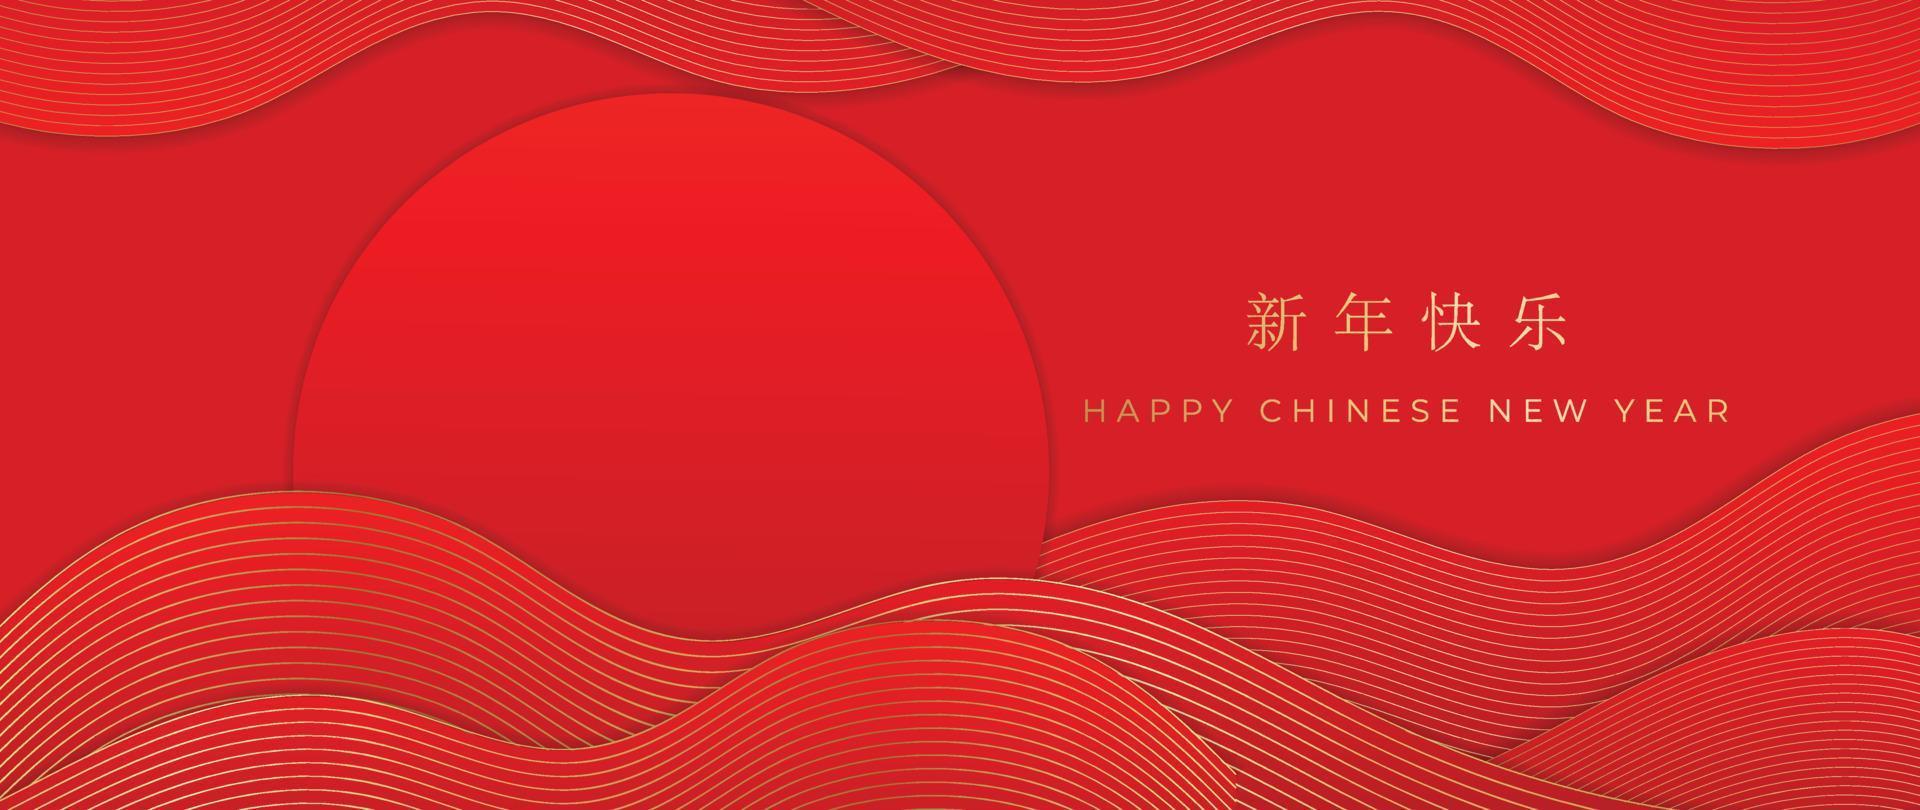 vecteur de fond de modèle de style de luxe oriental joyeux nouvel an chinois. superposition de motif de ligne dorée vague courbe abstraite avec fond rouge dégradé. illustration de conception pour papier peint, carte, affiche.